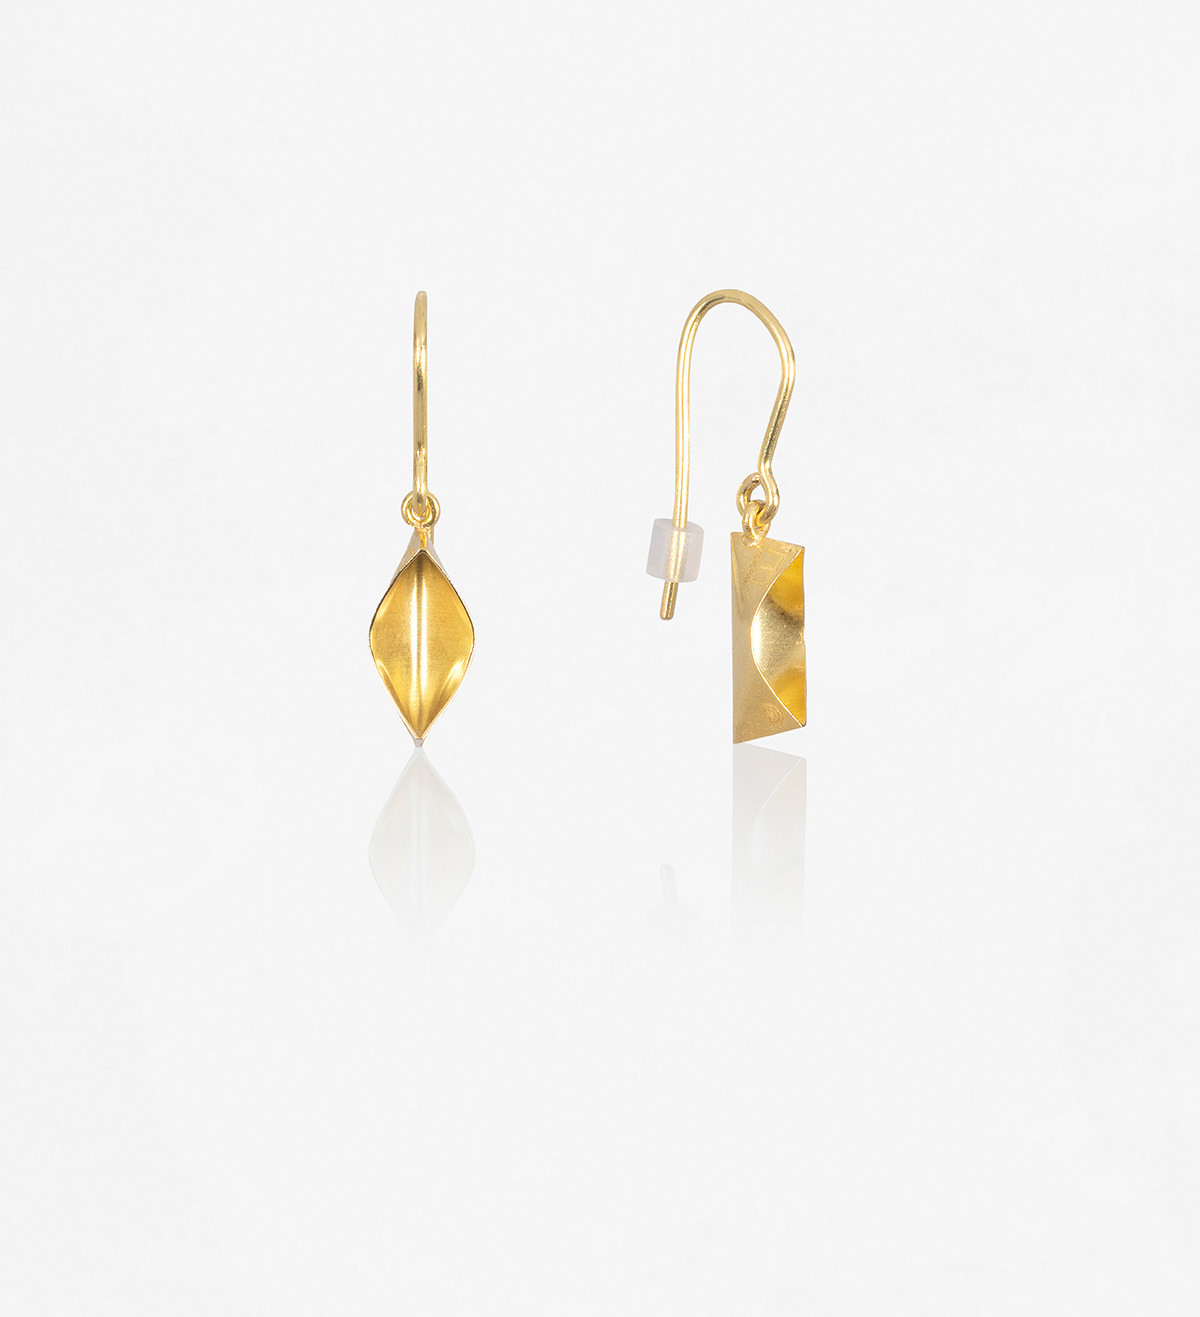 18k gold earrings Bots 14mm